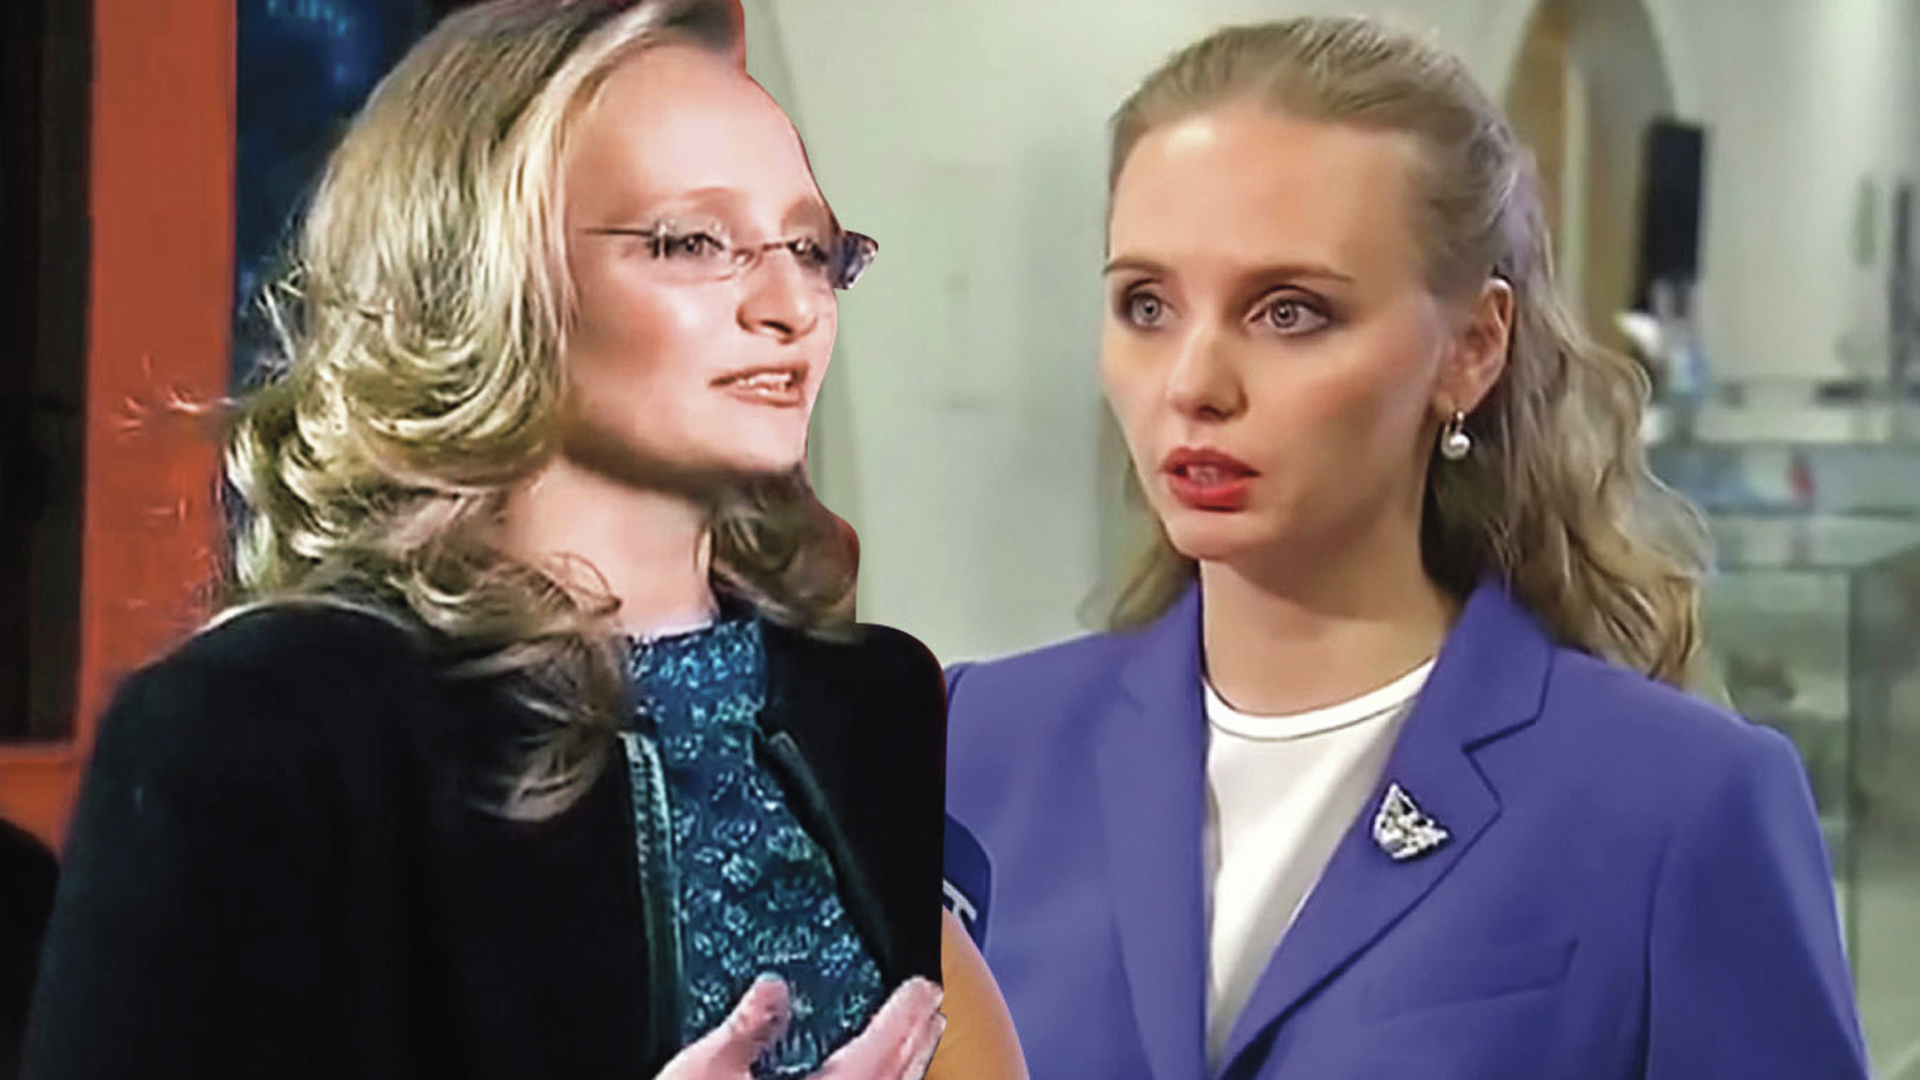 As filhas de Putin: A bailarina e a endocrinologista